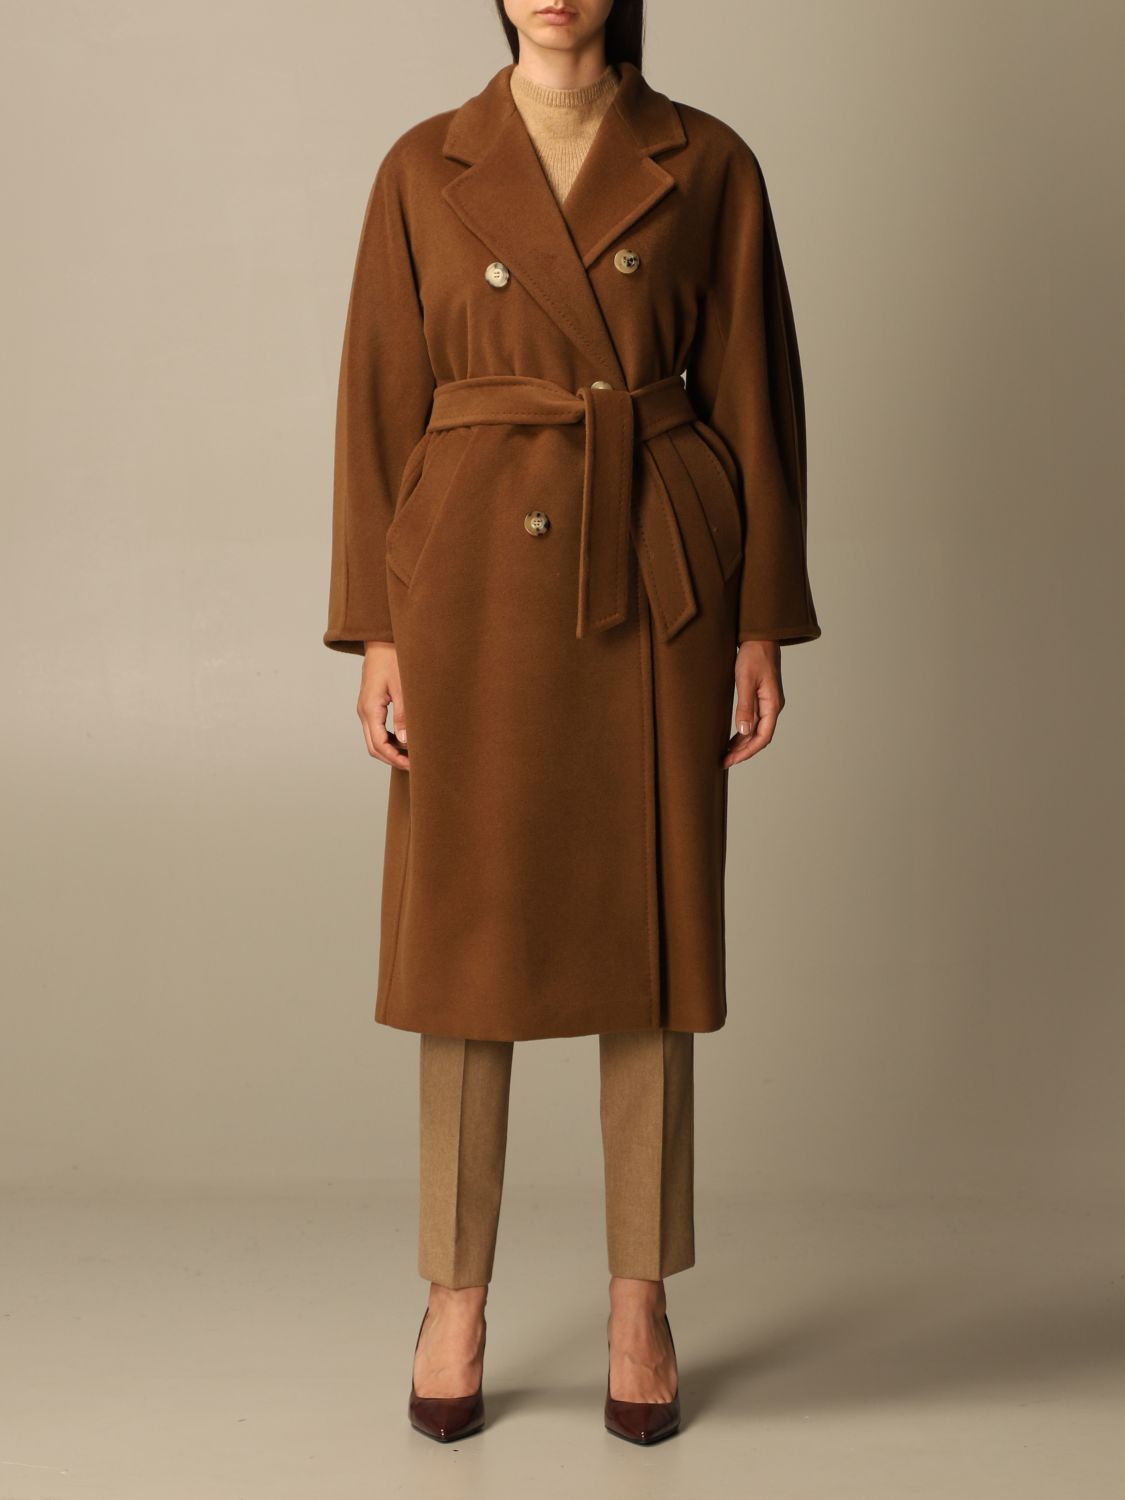 madame coats online